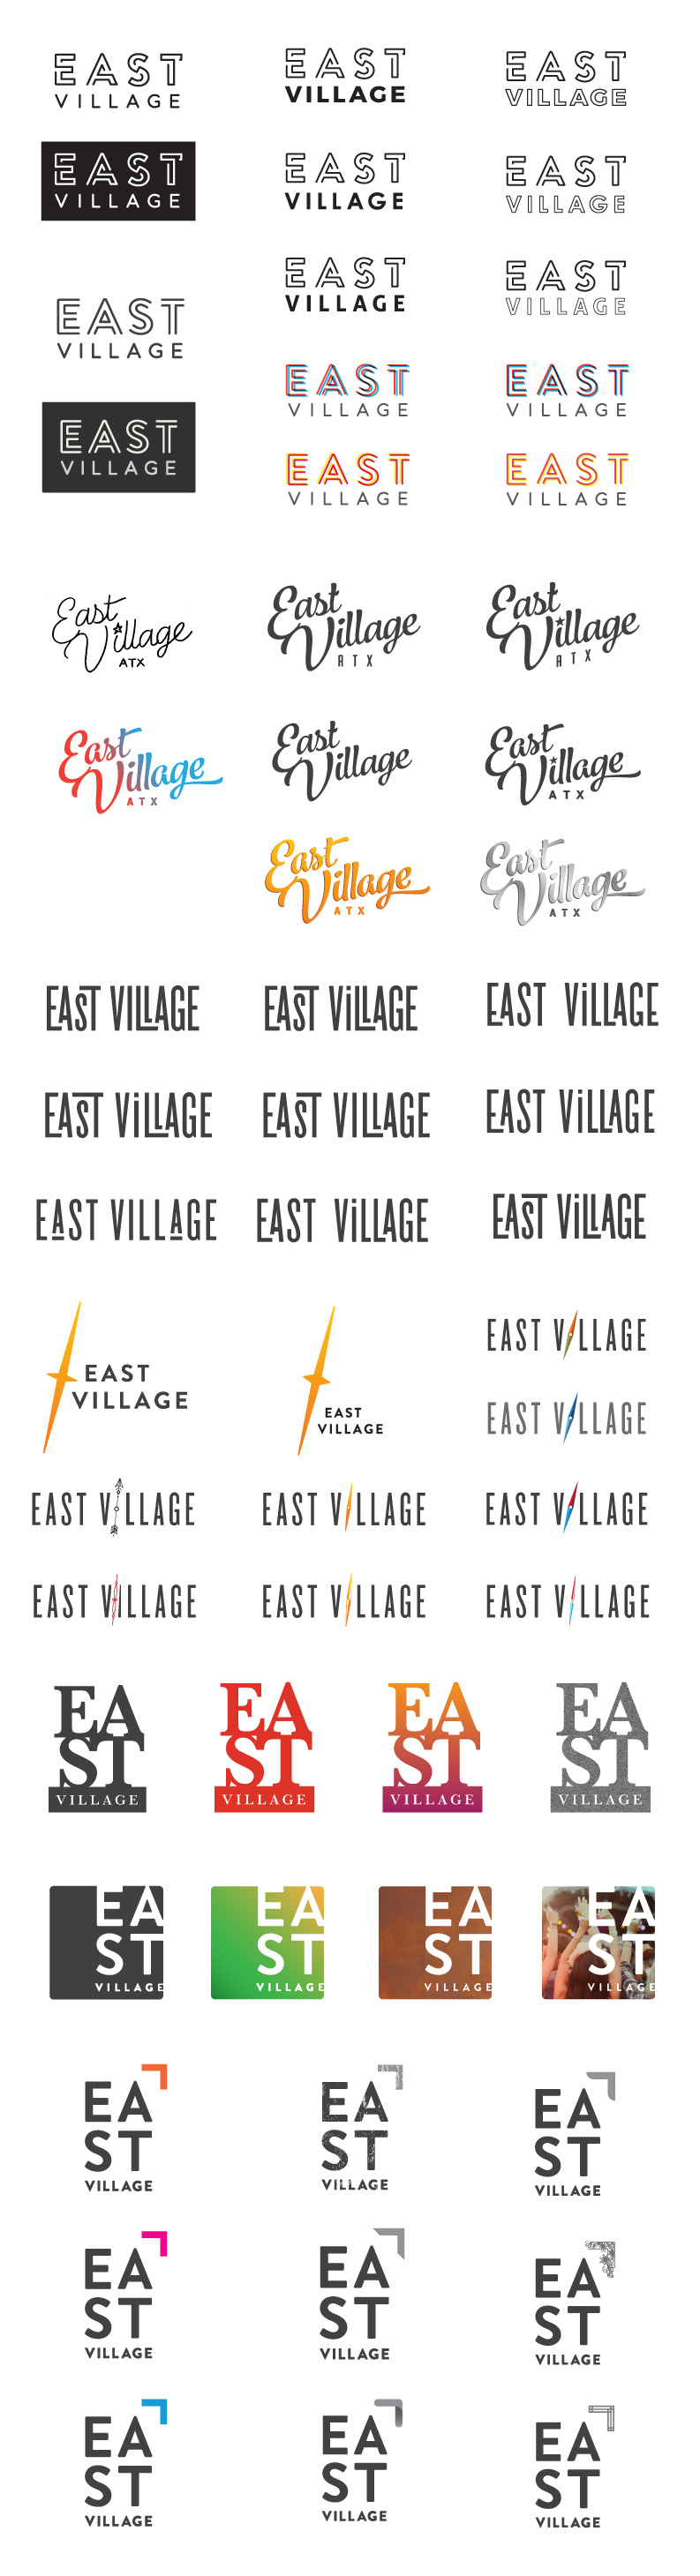 east village logo concepts